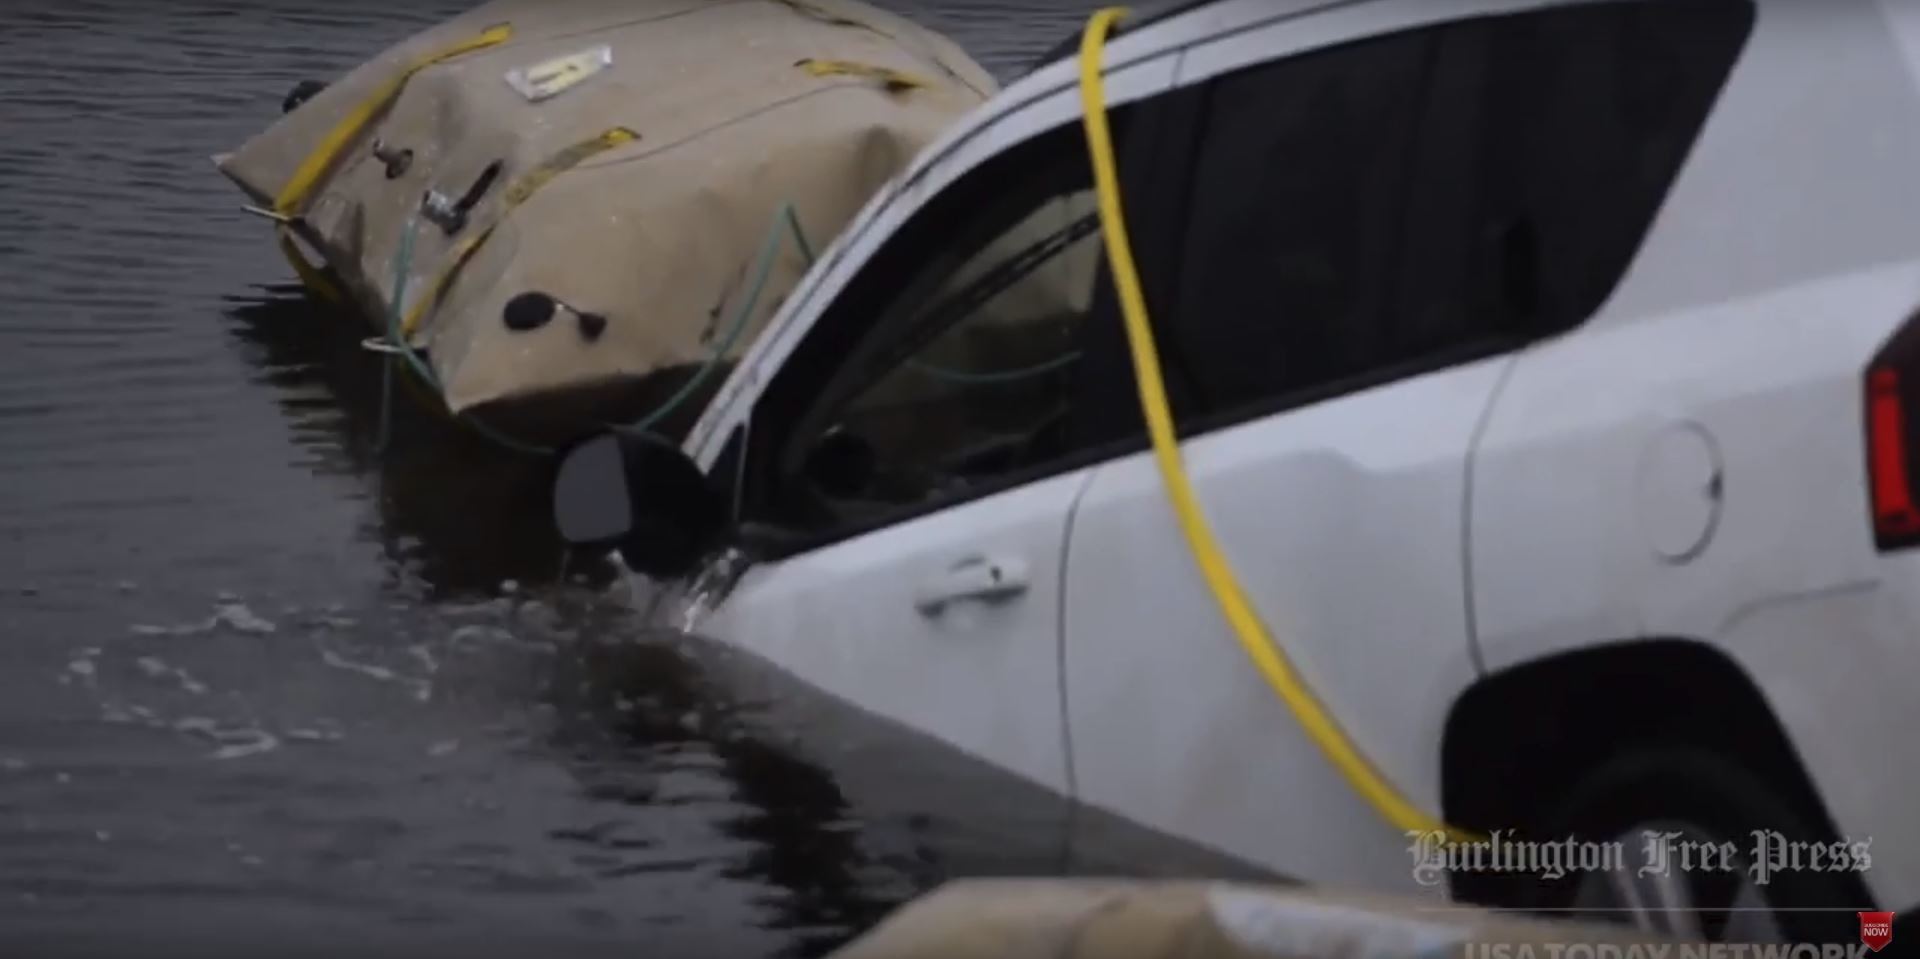 Navigace Waze poslala řidiče Jeepu doprostřed zamrzlého jezera (Youtube/USAToday)